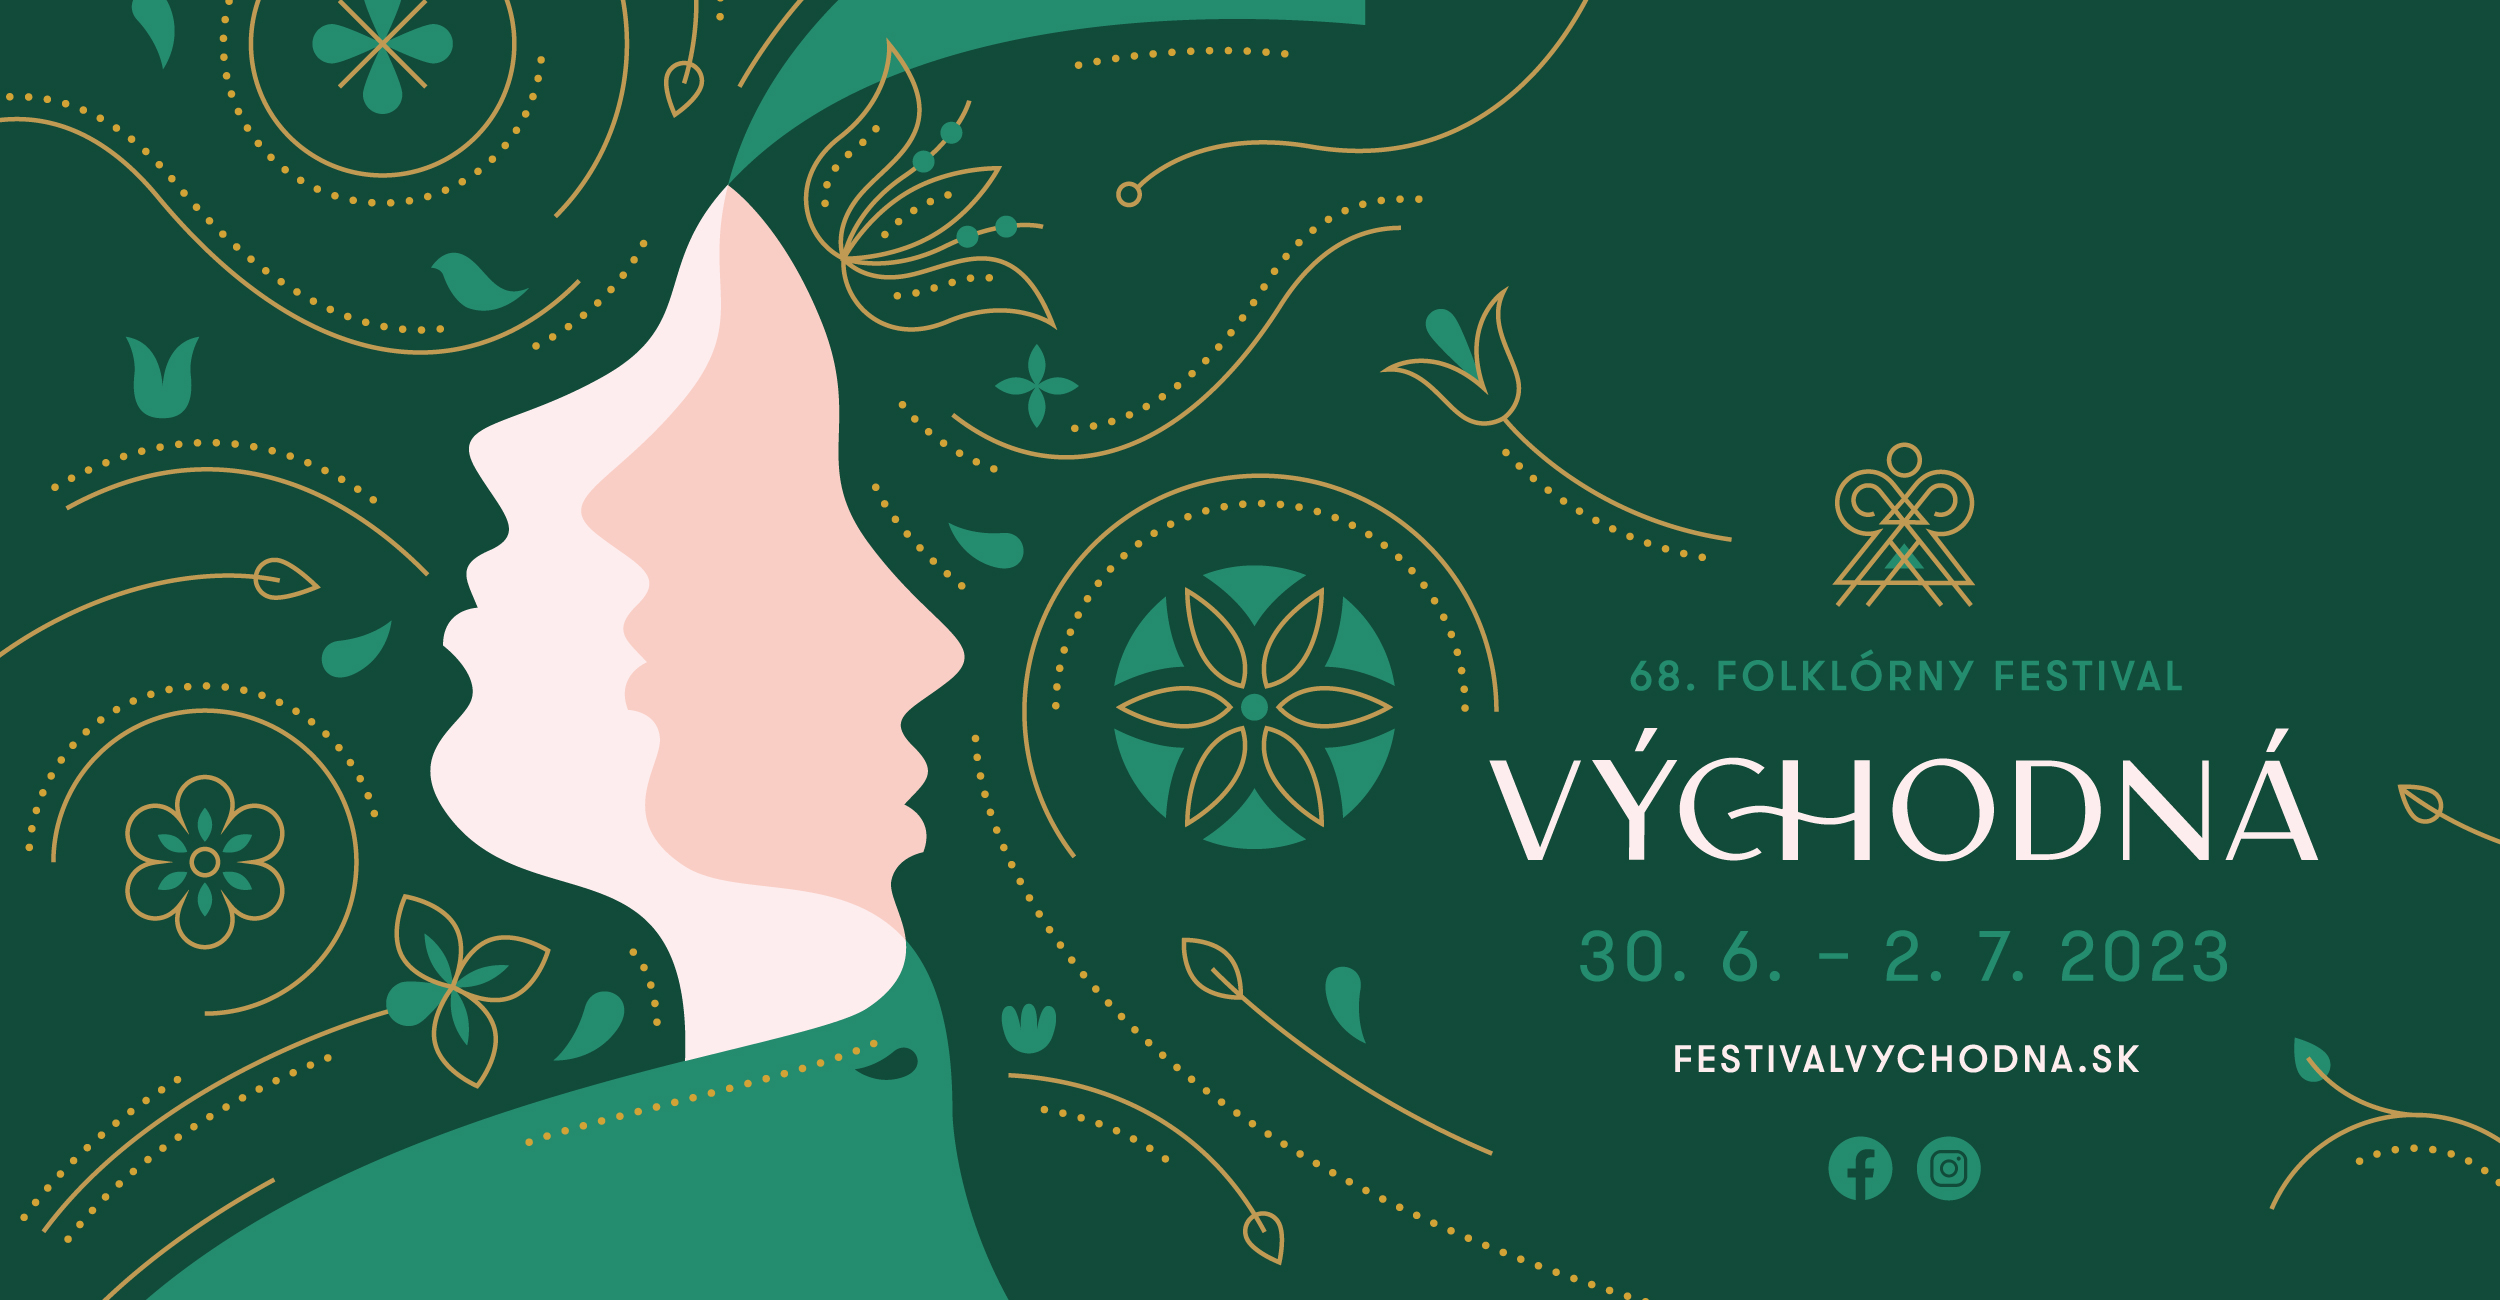 Folklórny festival Východná, 30. 6. - 2. 7. 2023